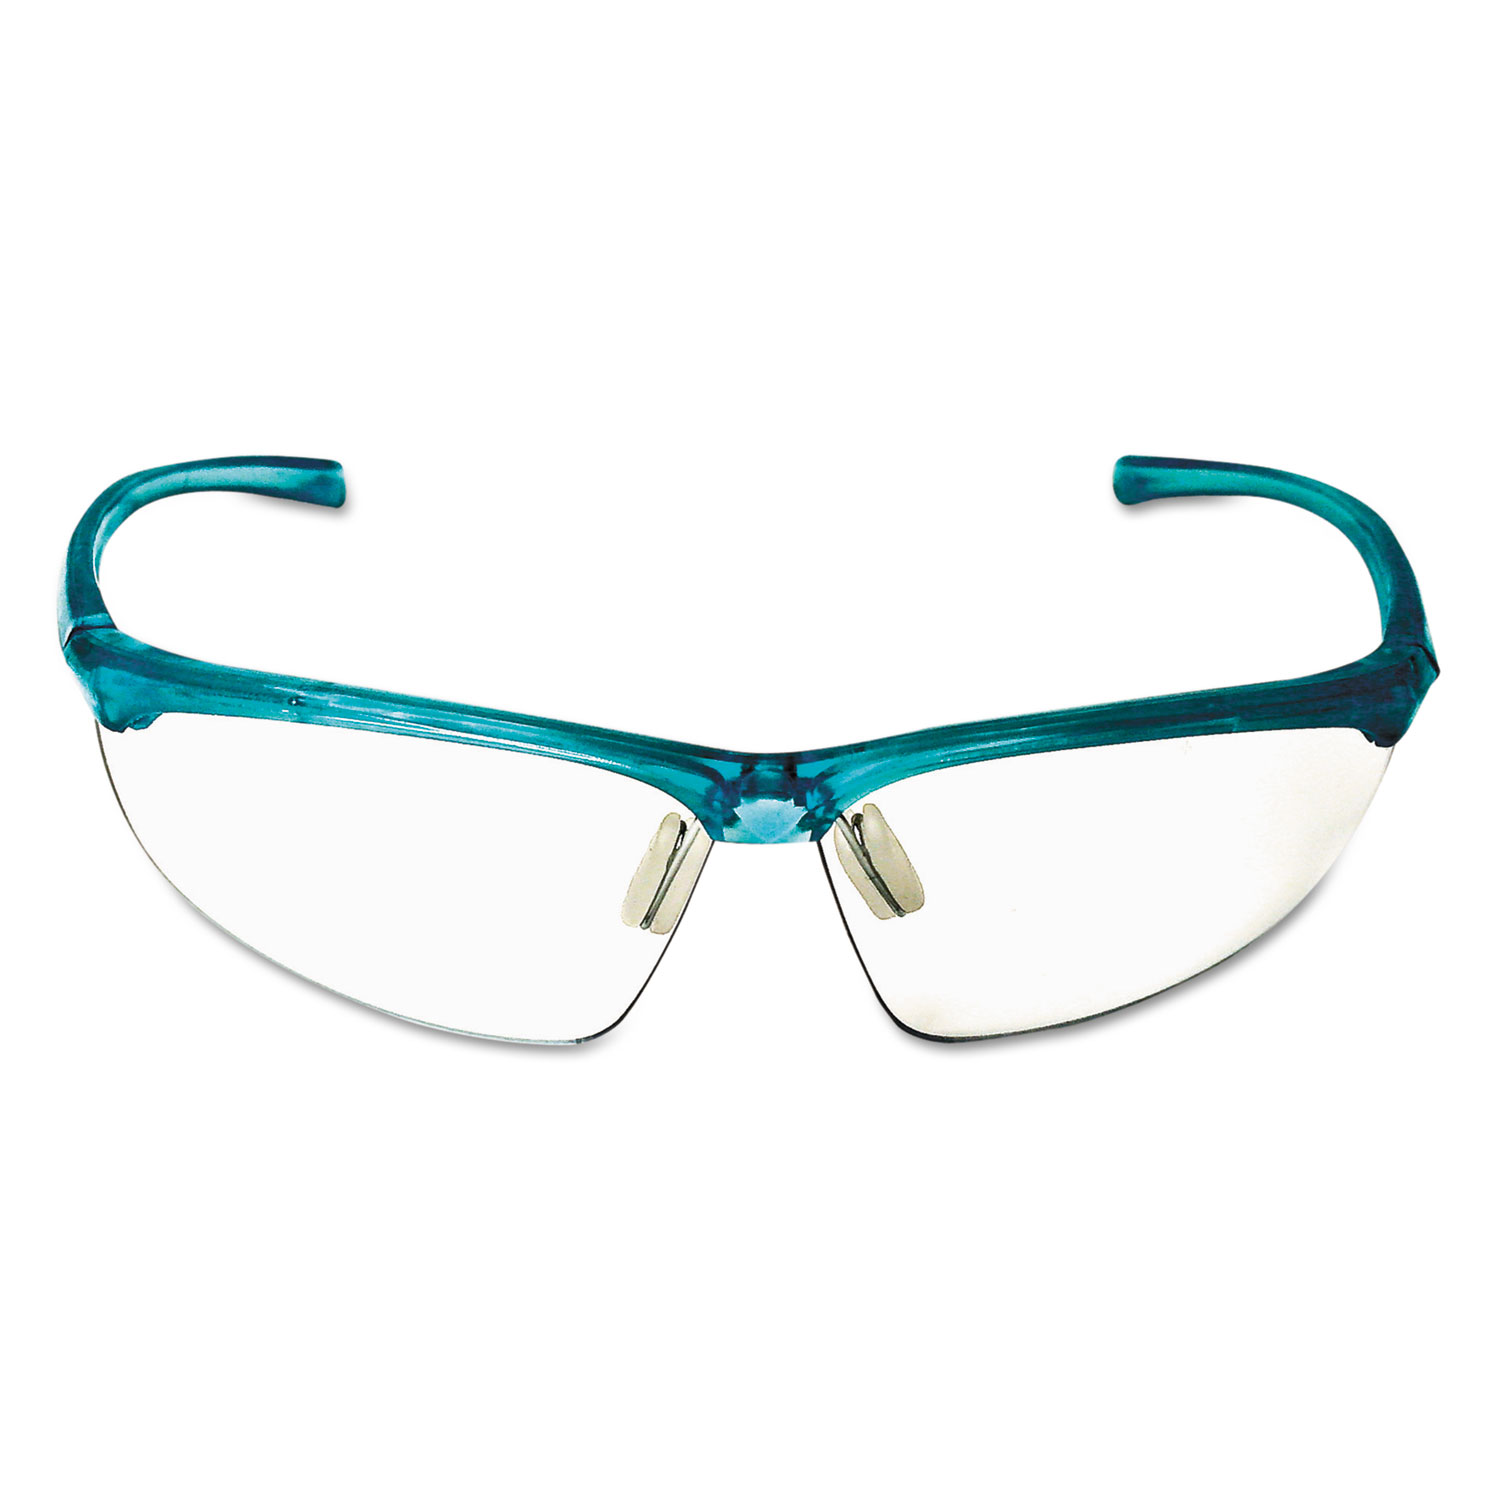  3M 11735-00000-20 Refine 201 Safety Glasses, Half-frame, Clear AntiFog Lens, Teal Frame (MMM117350000020) 